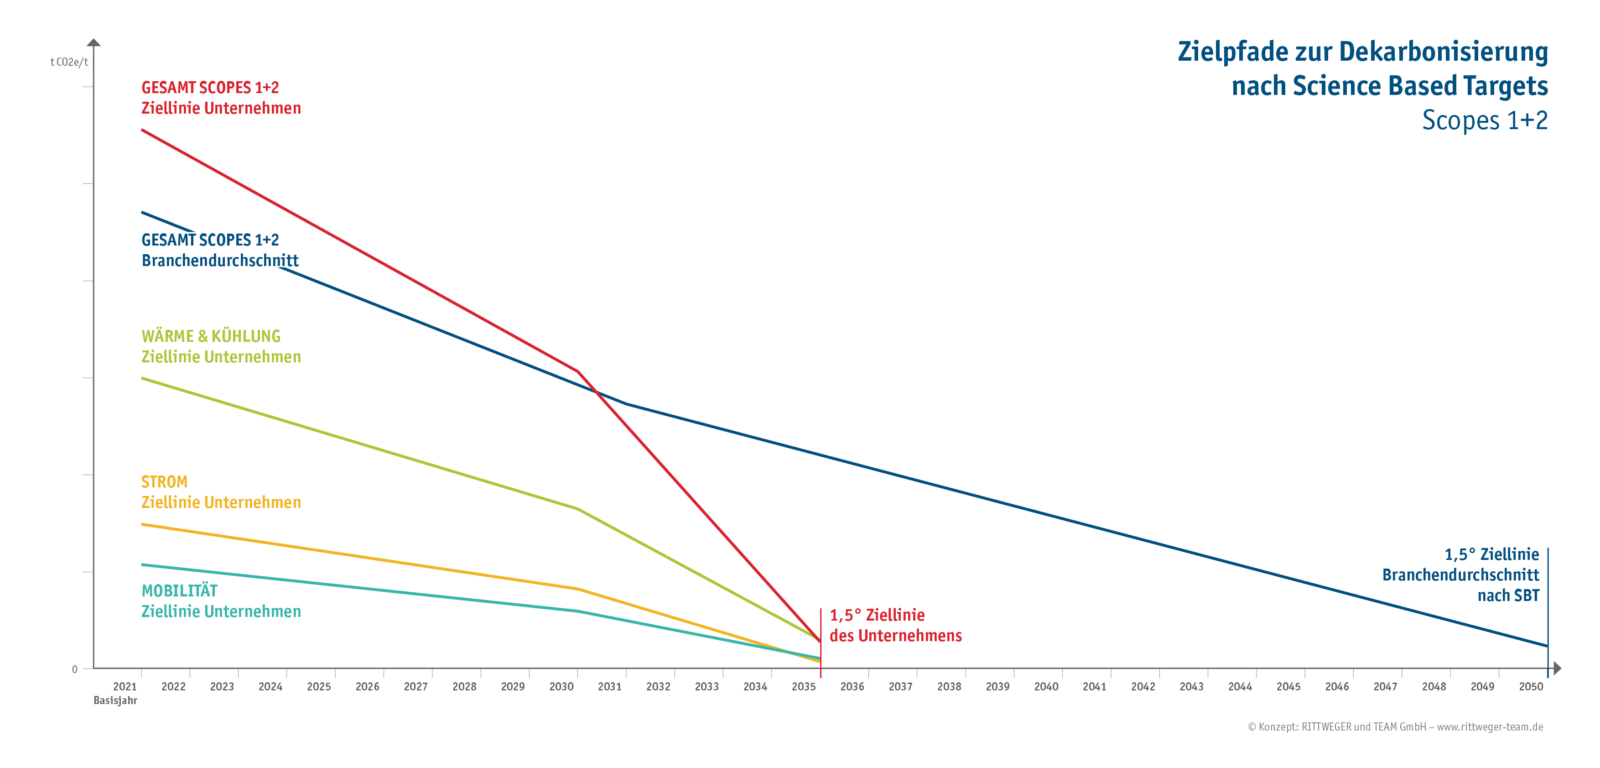 Darstellung von Zielpfaden zur Dekarbonisierung in Scopes 1 und 2 GHG nach Science Based Targets gemäß des 1,5-Grad-Ziels